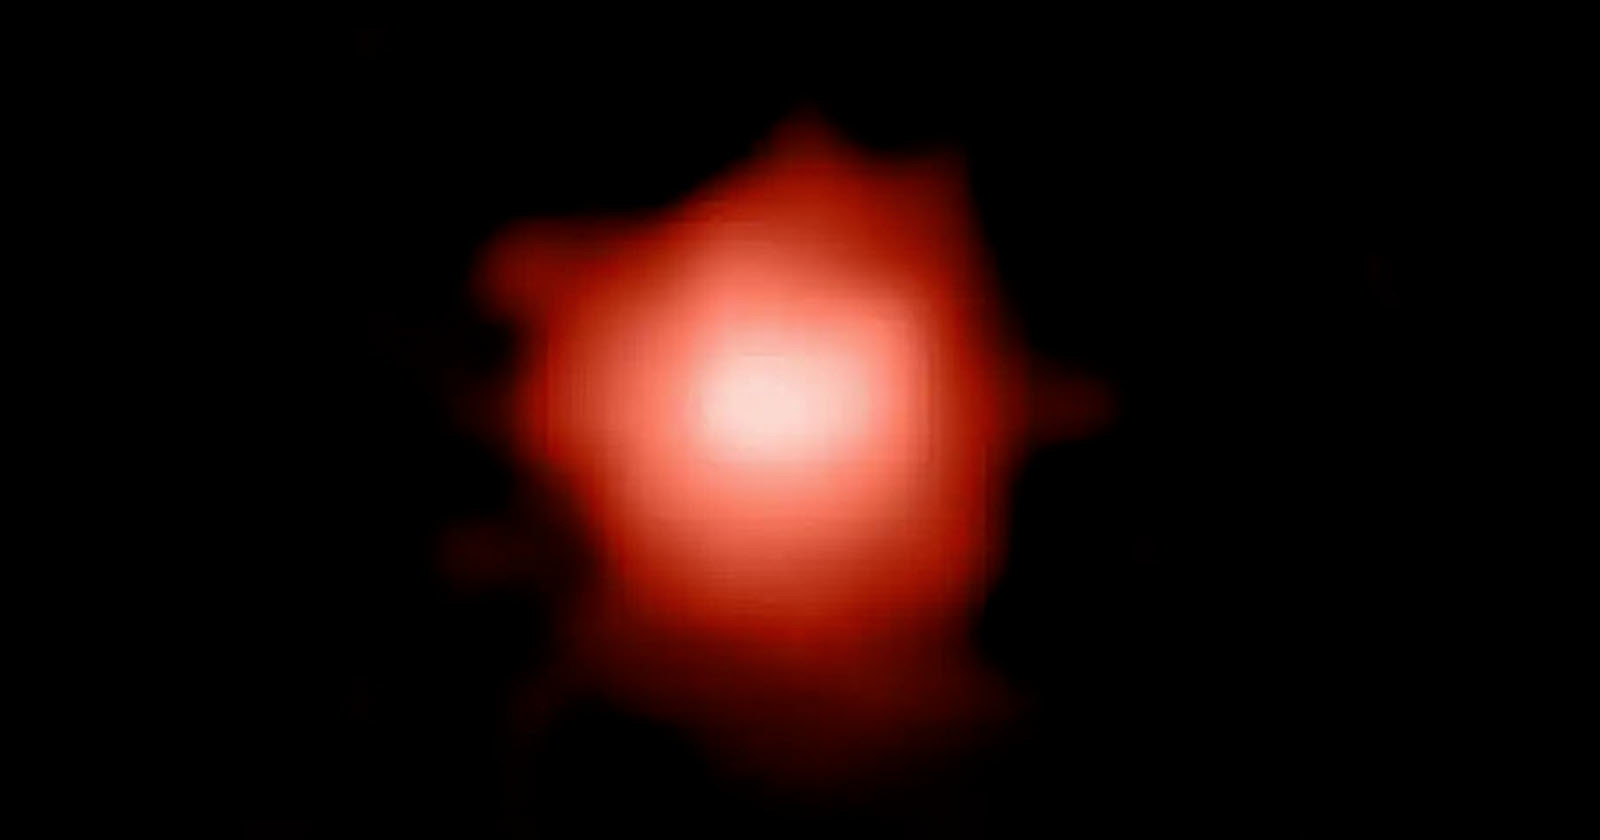  james webb telescope breaks record oldest galaxy 